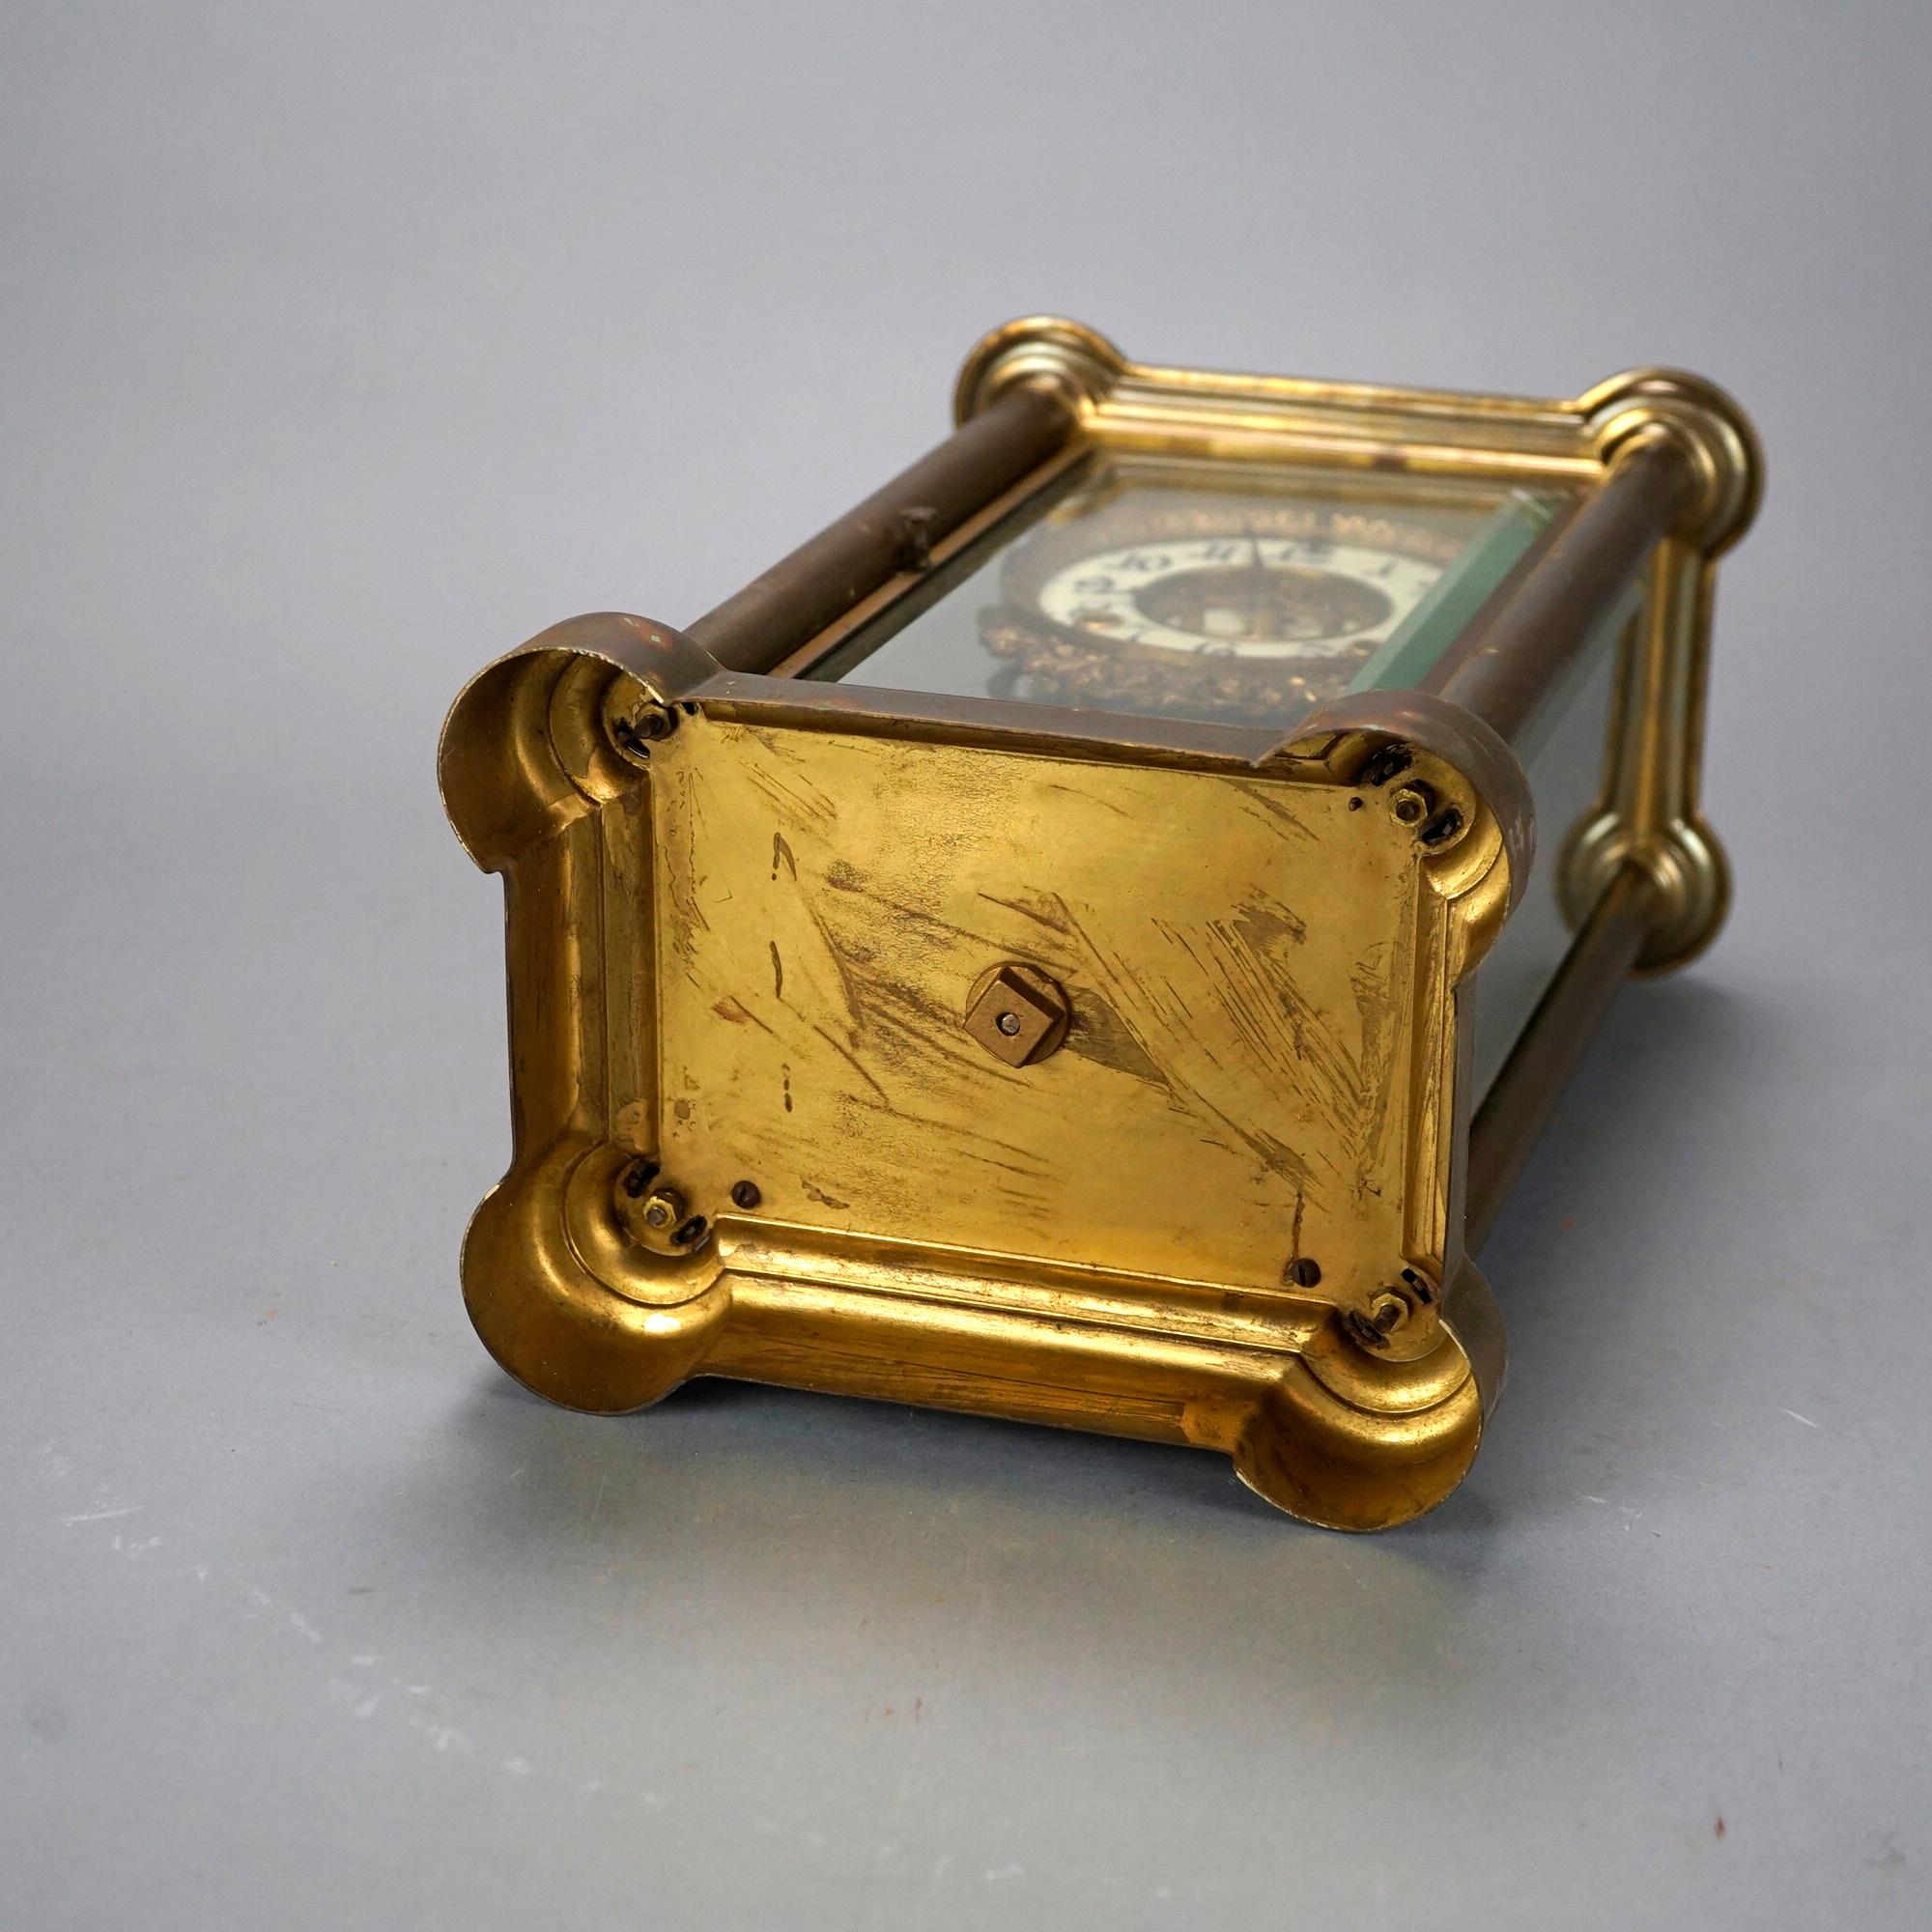 Antique Ansonia Crystal Regulator Mantle Clock Circa 1900 8